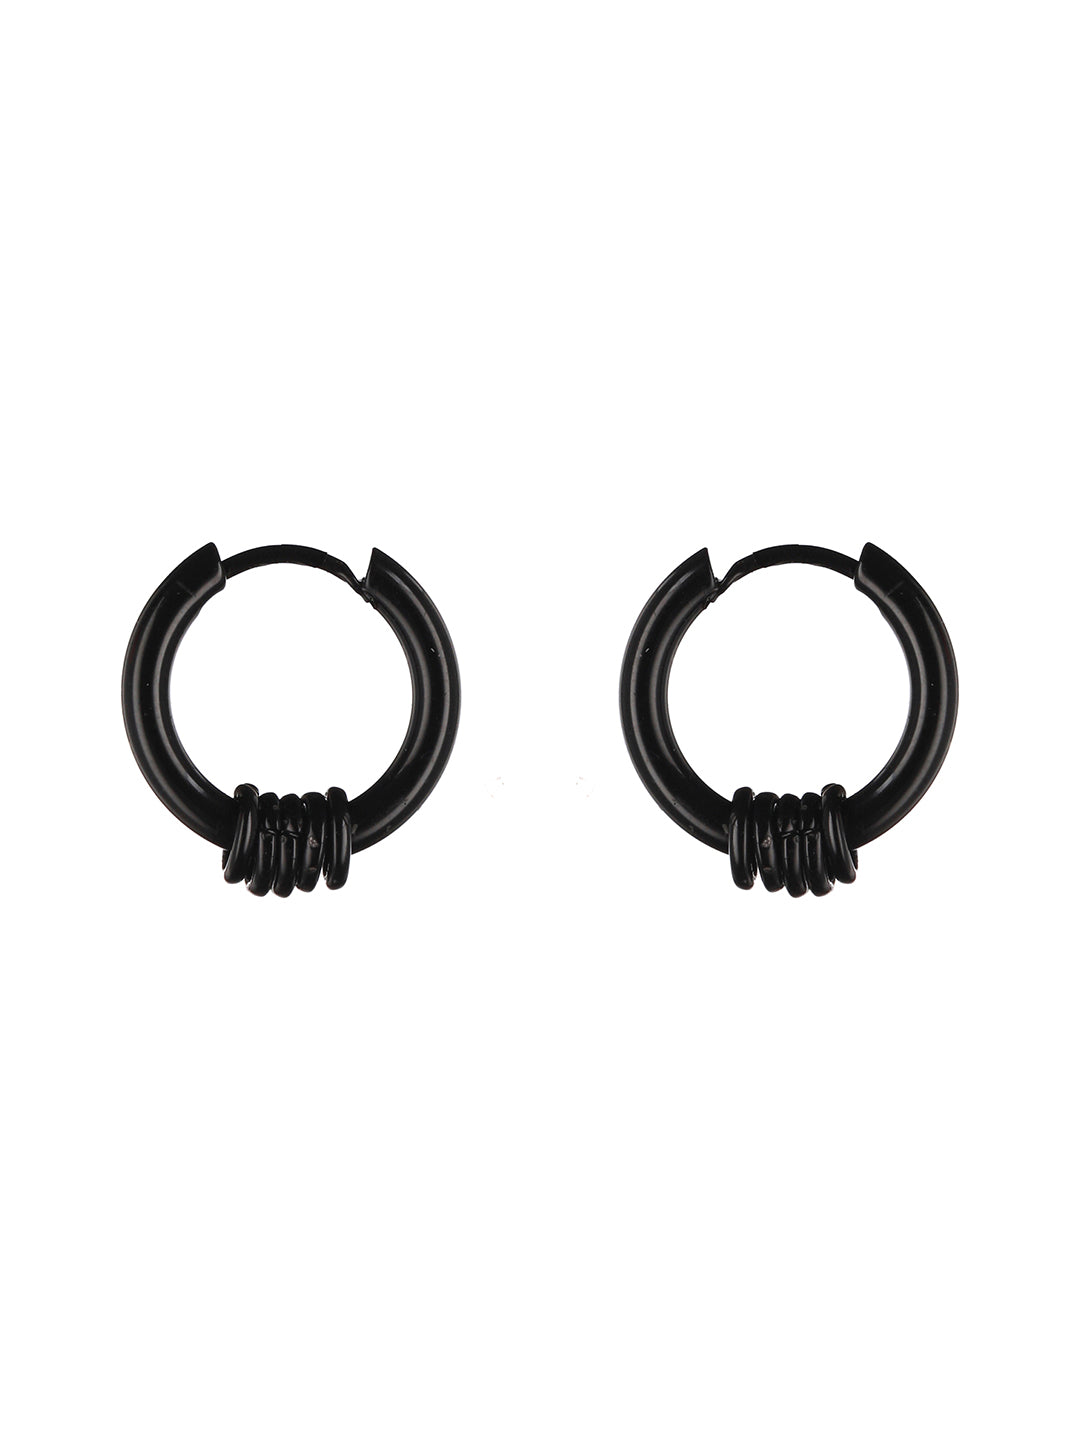 Bold by Priyaasi Black & Silver Blade Ring Hoop Earrings for Men (Set of 3)